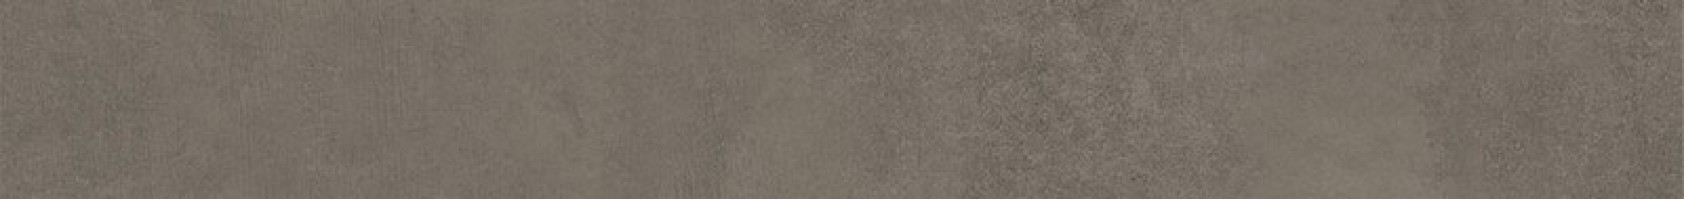 Плинтус Kerama Marazzi Про Догана коричневый матовый обрезной 9.5x80 DD841890R/8BT